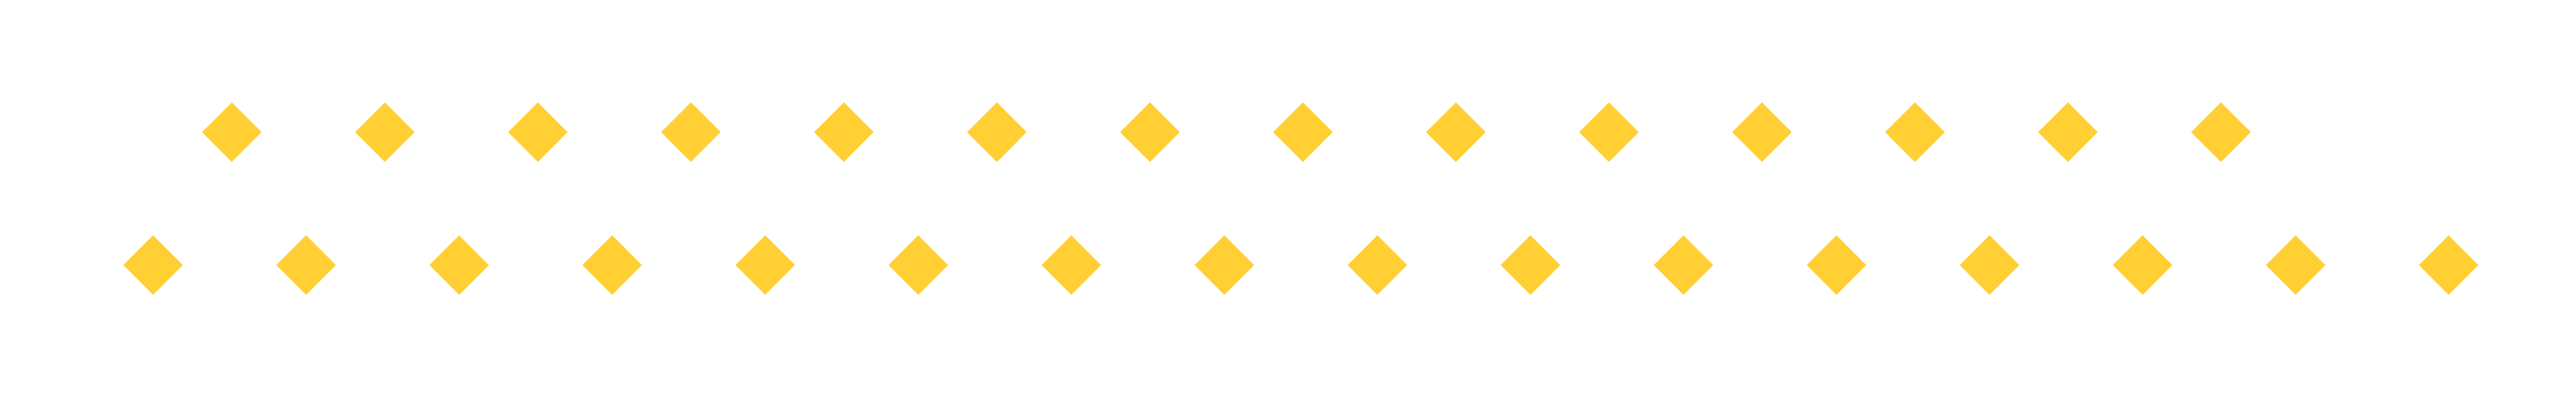 Yellow diamonds pattern